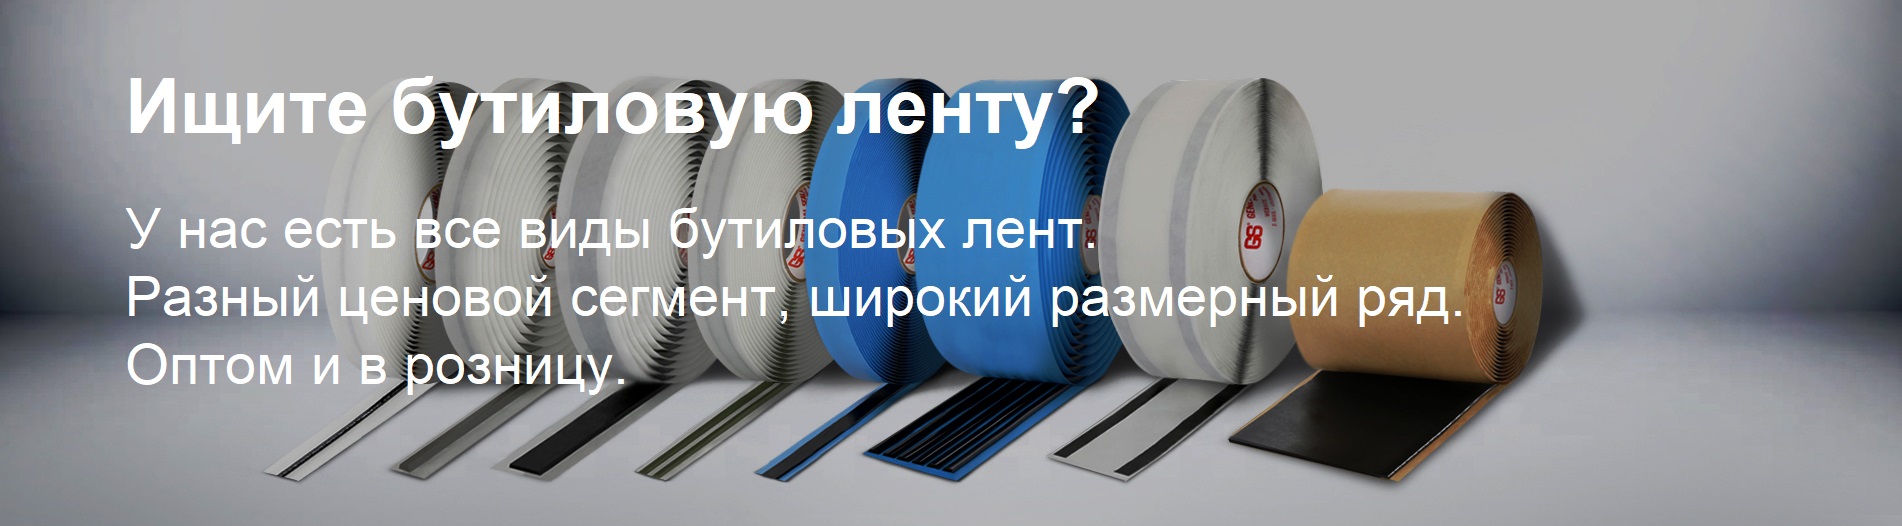 Бутиловые ленты - самый большой выбор в России